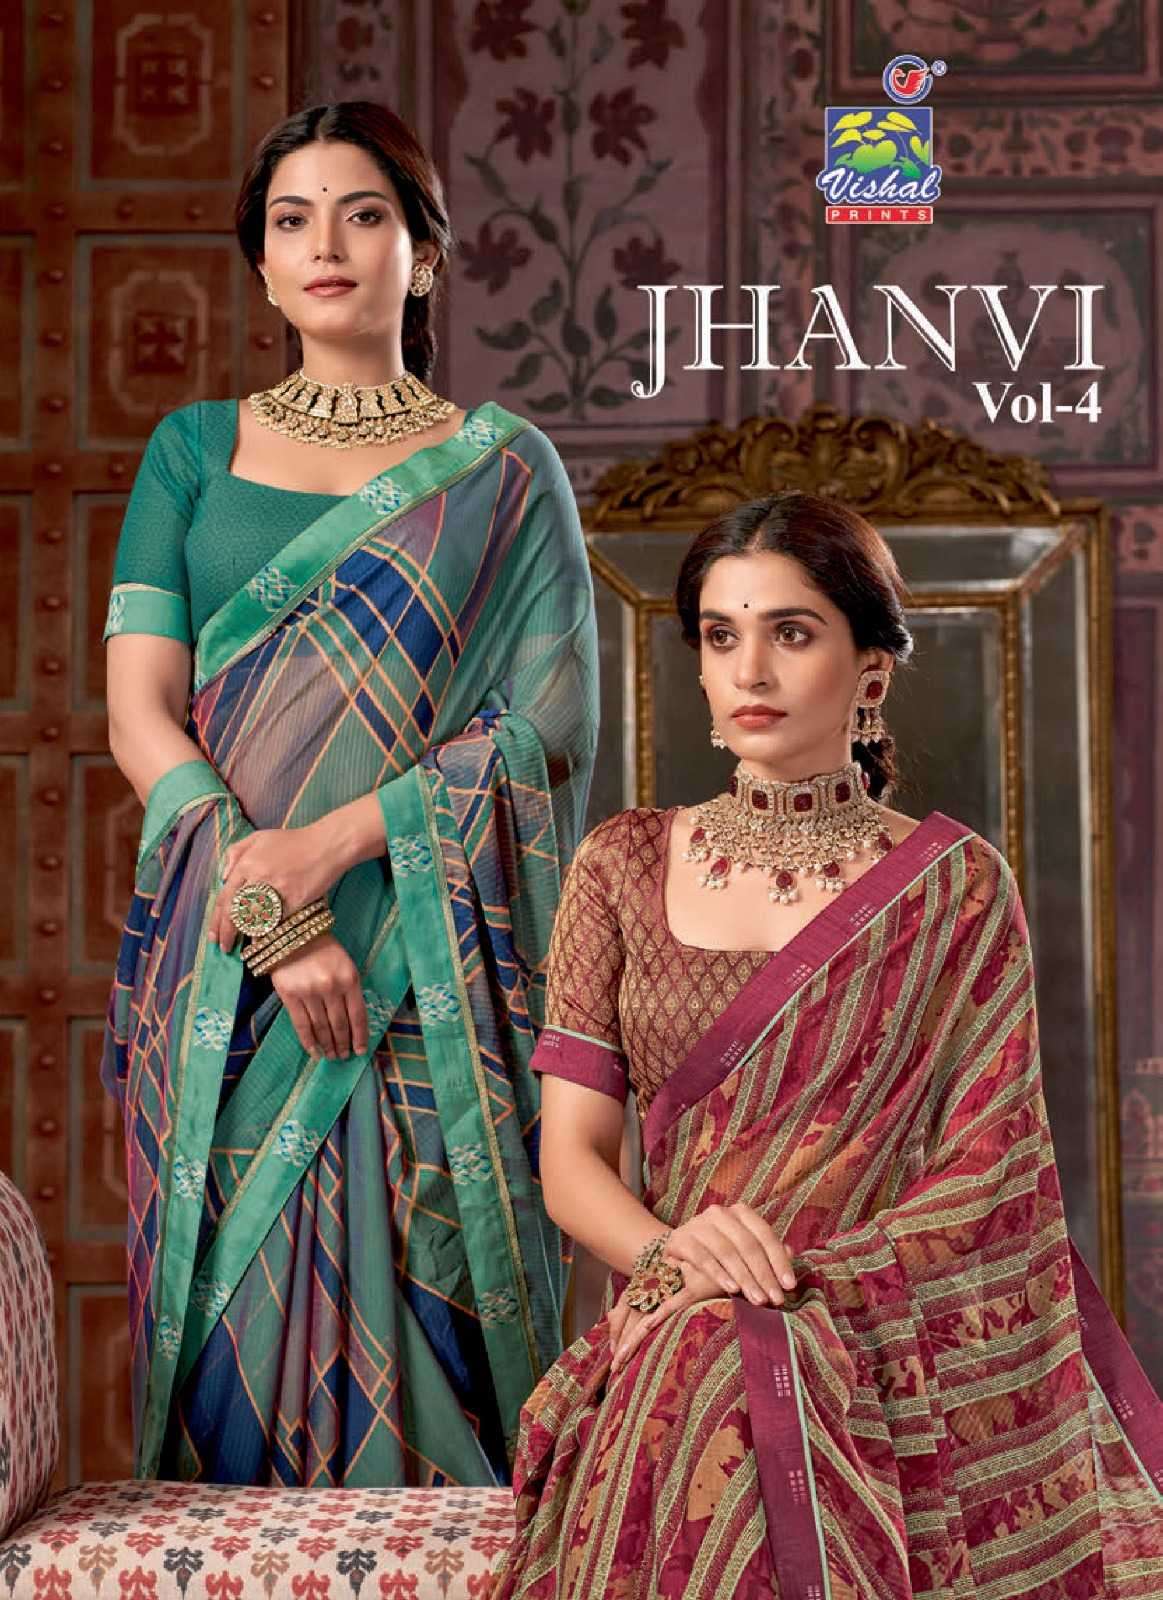 vishal print jhanvi vol 4 series 47970-47981 fancy saree